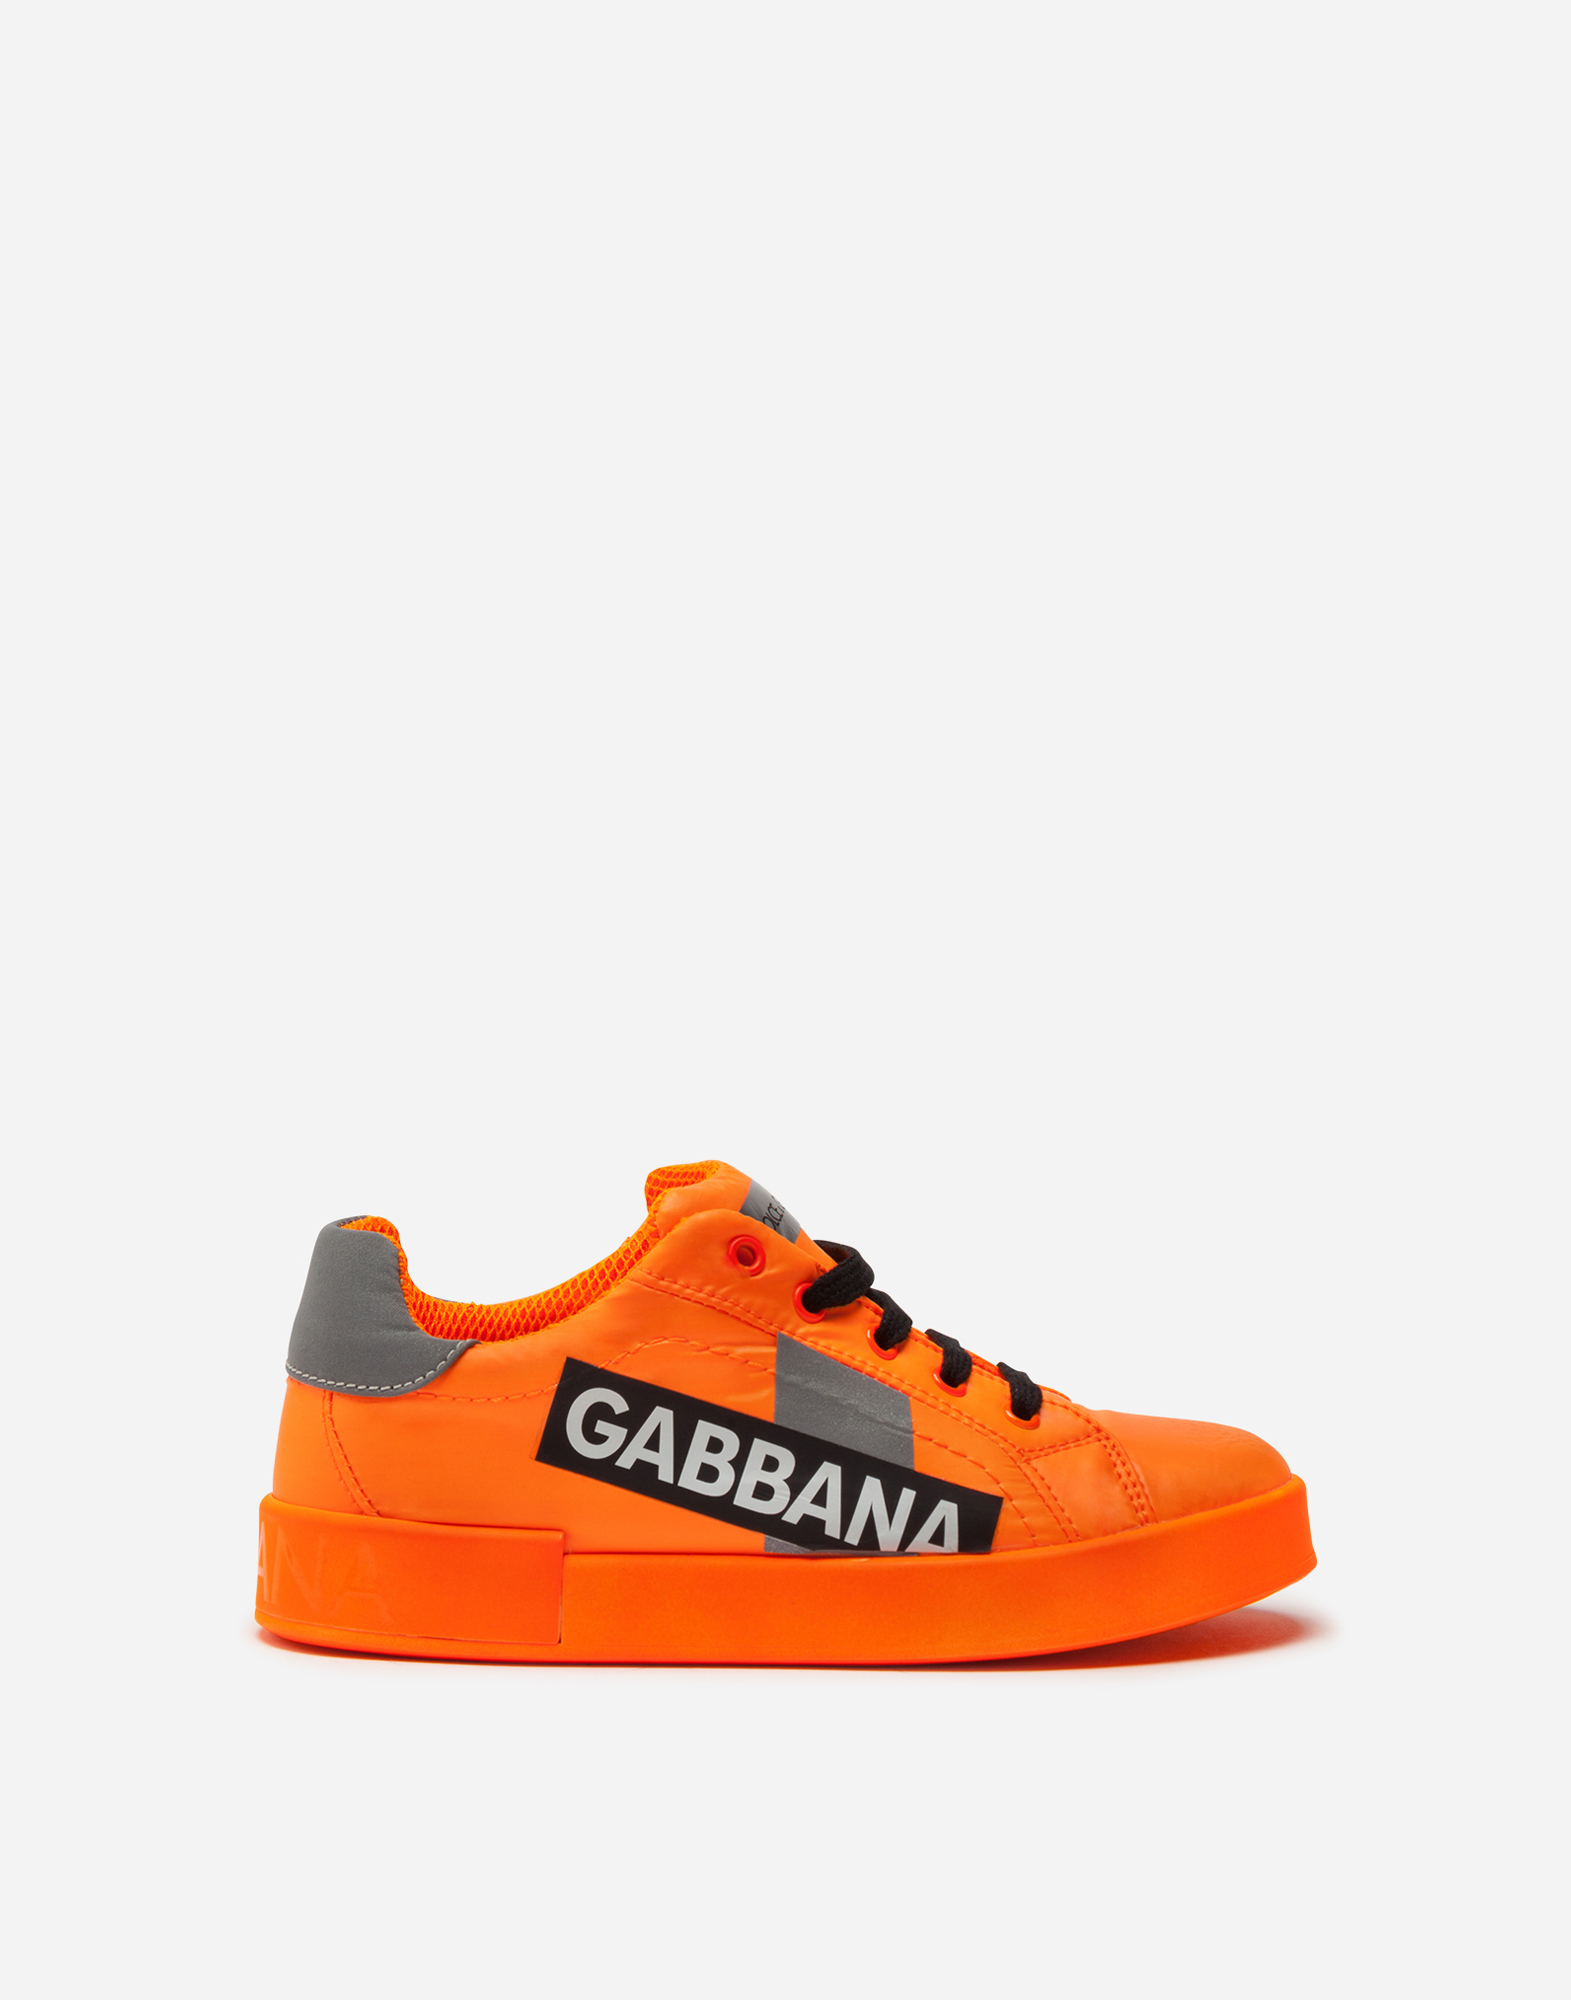 dolce gabbana custom shoes